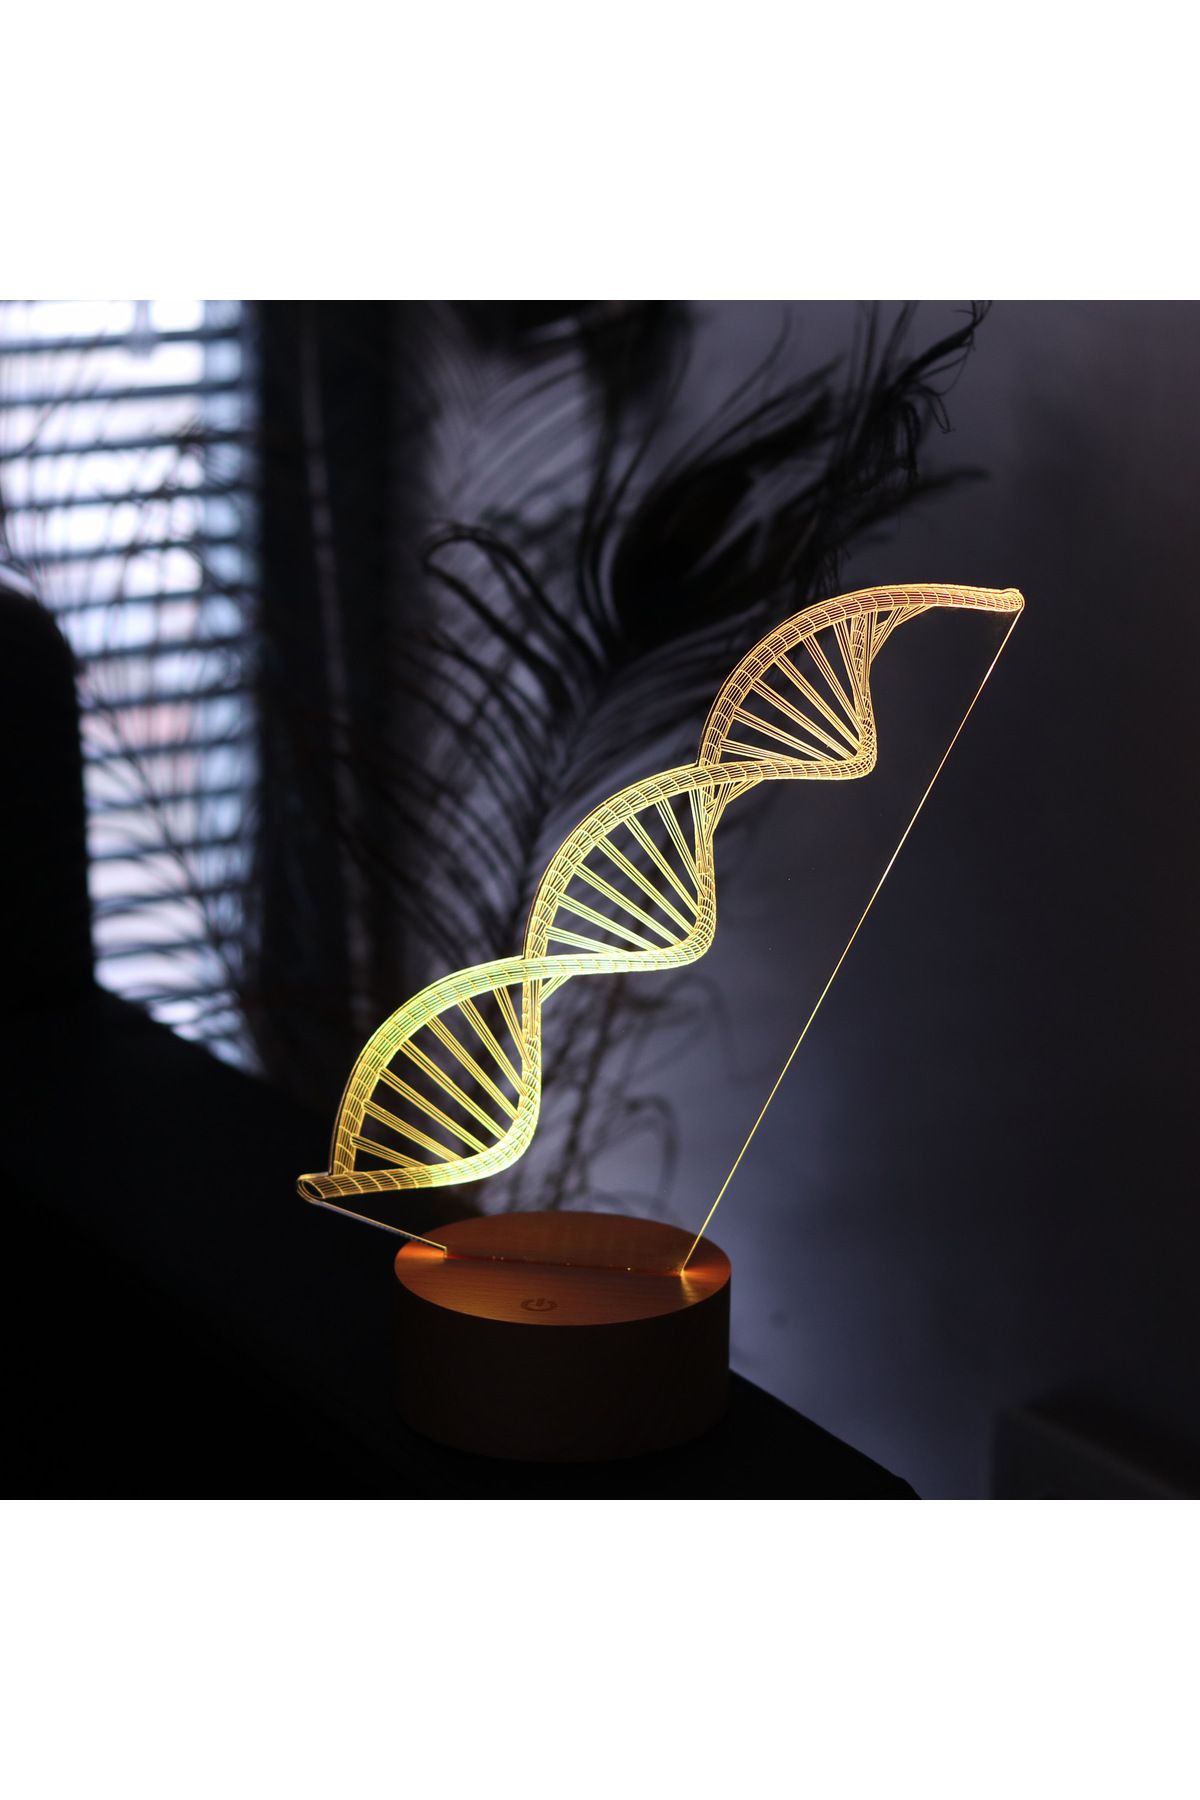 BY-LAMP DNA Çift Sarmal Figürlü Dekoratif Hediye Led Masa Lambası | 7 Işık Rengi | Ahşap Taban